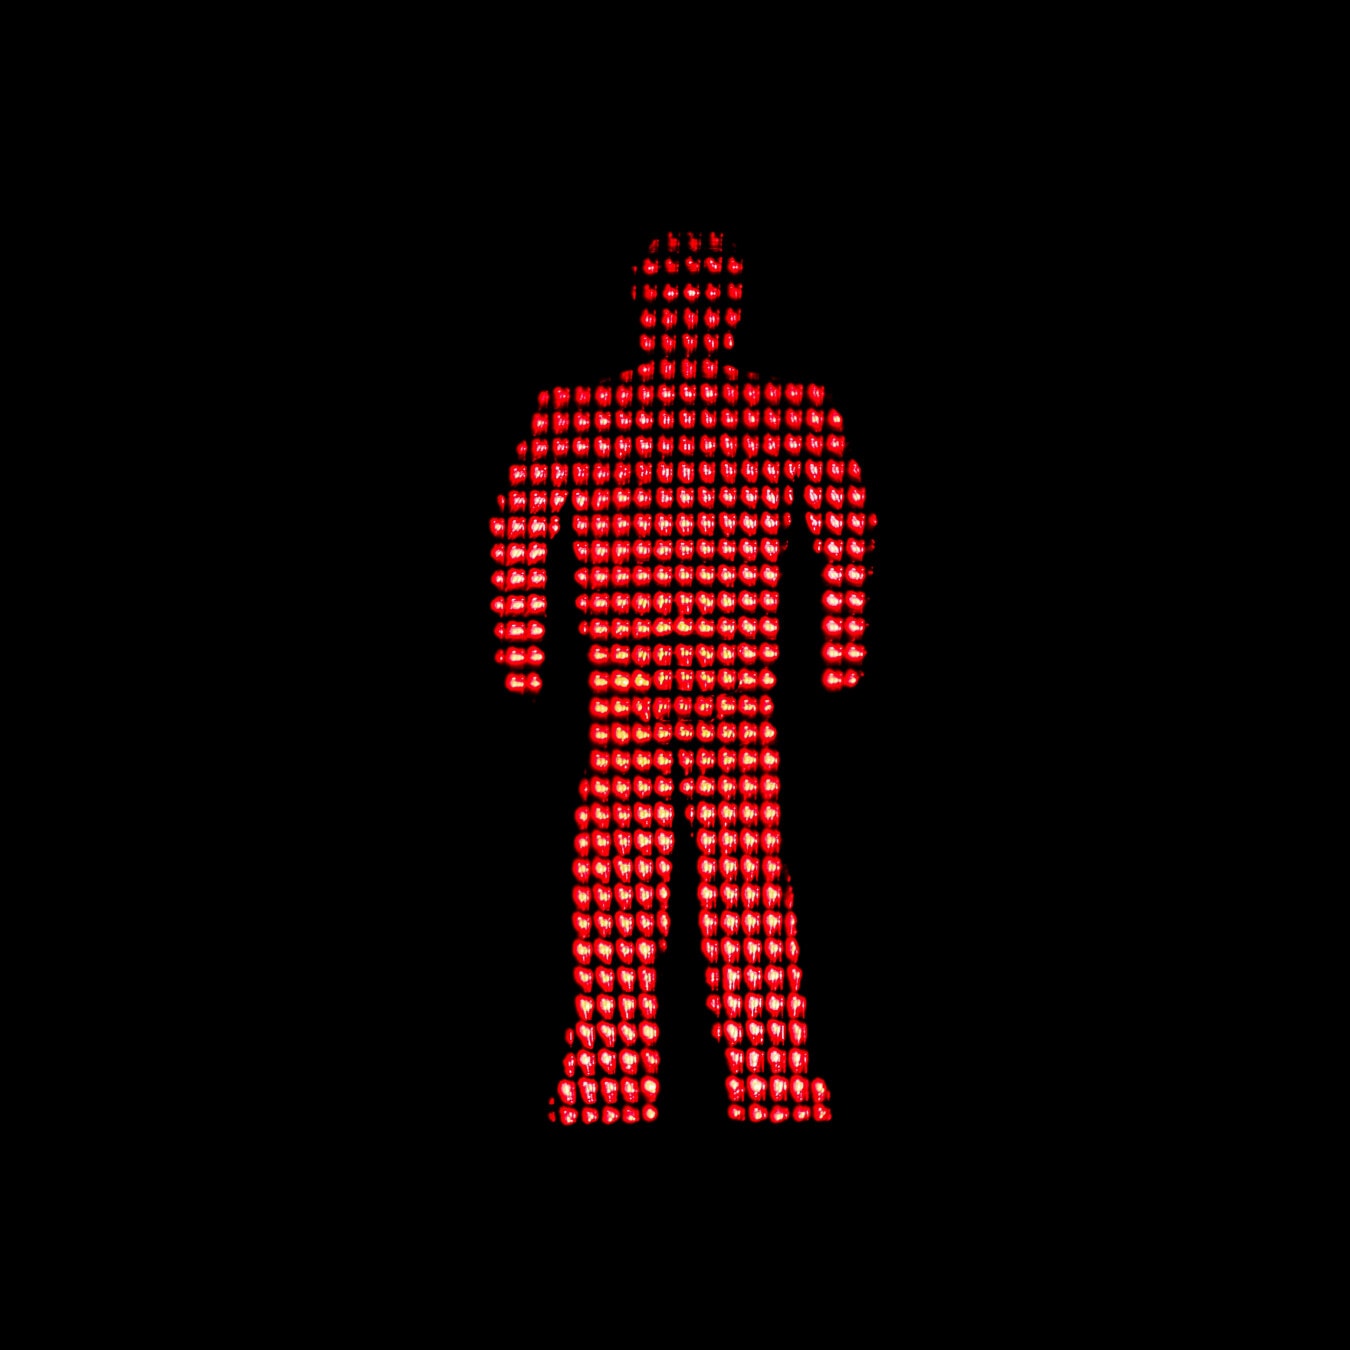 червоне світло, семафора, Світлофор, світло, червоний, управління рухом, попередження, Зупинити, символ, трафік